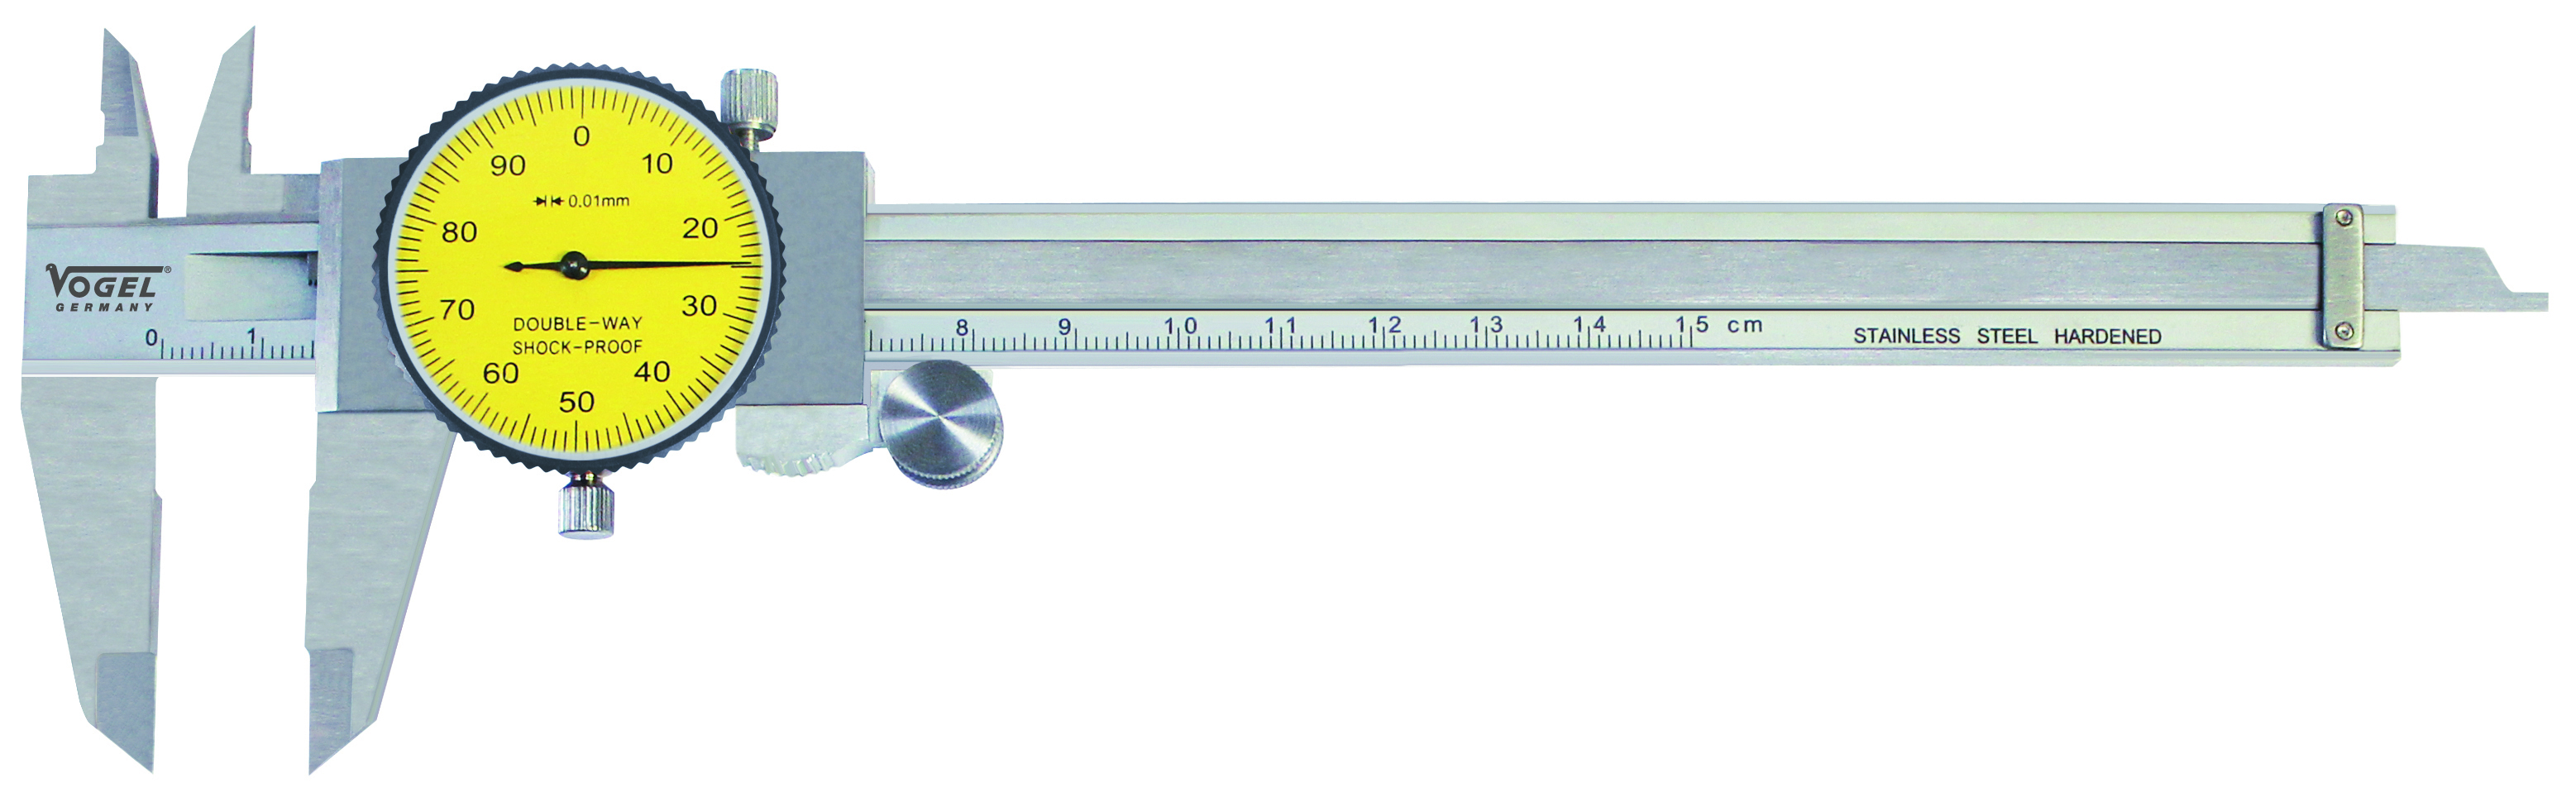 WELDINGER Präzisions-Uhrenmessschieber mit Feststellschraube, Messbereich  150 mm